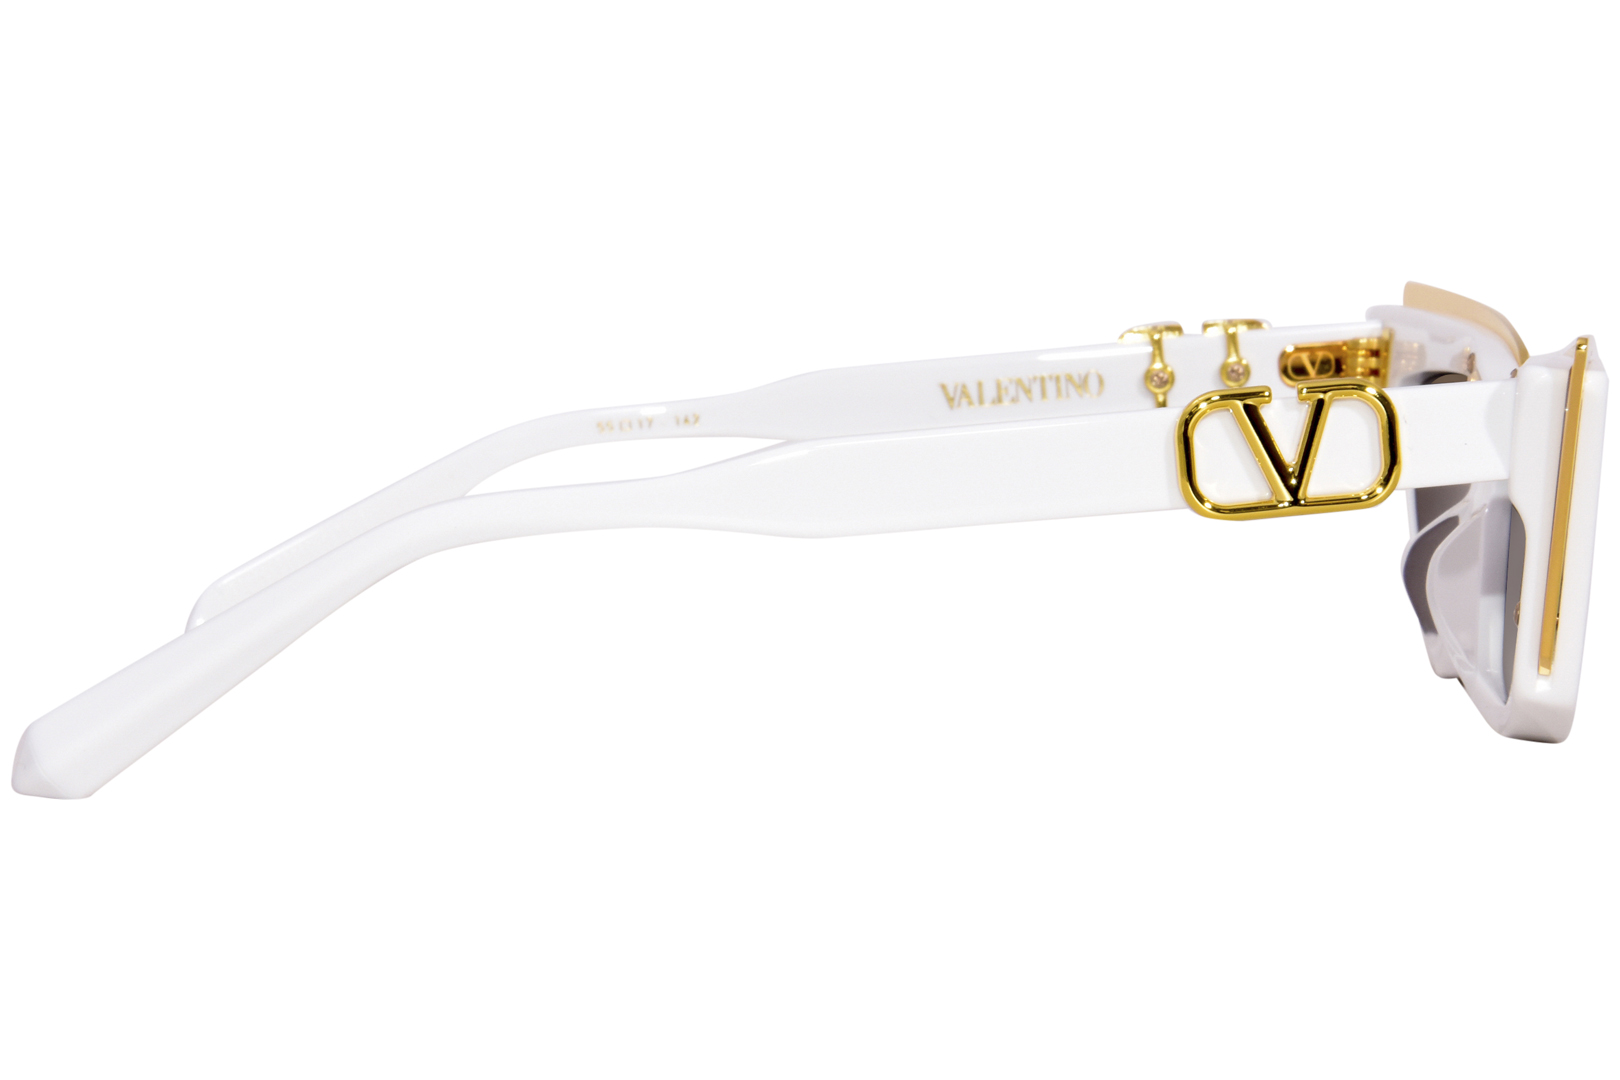 Valentino V - Goldcut - I Women Sunglasses - White